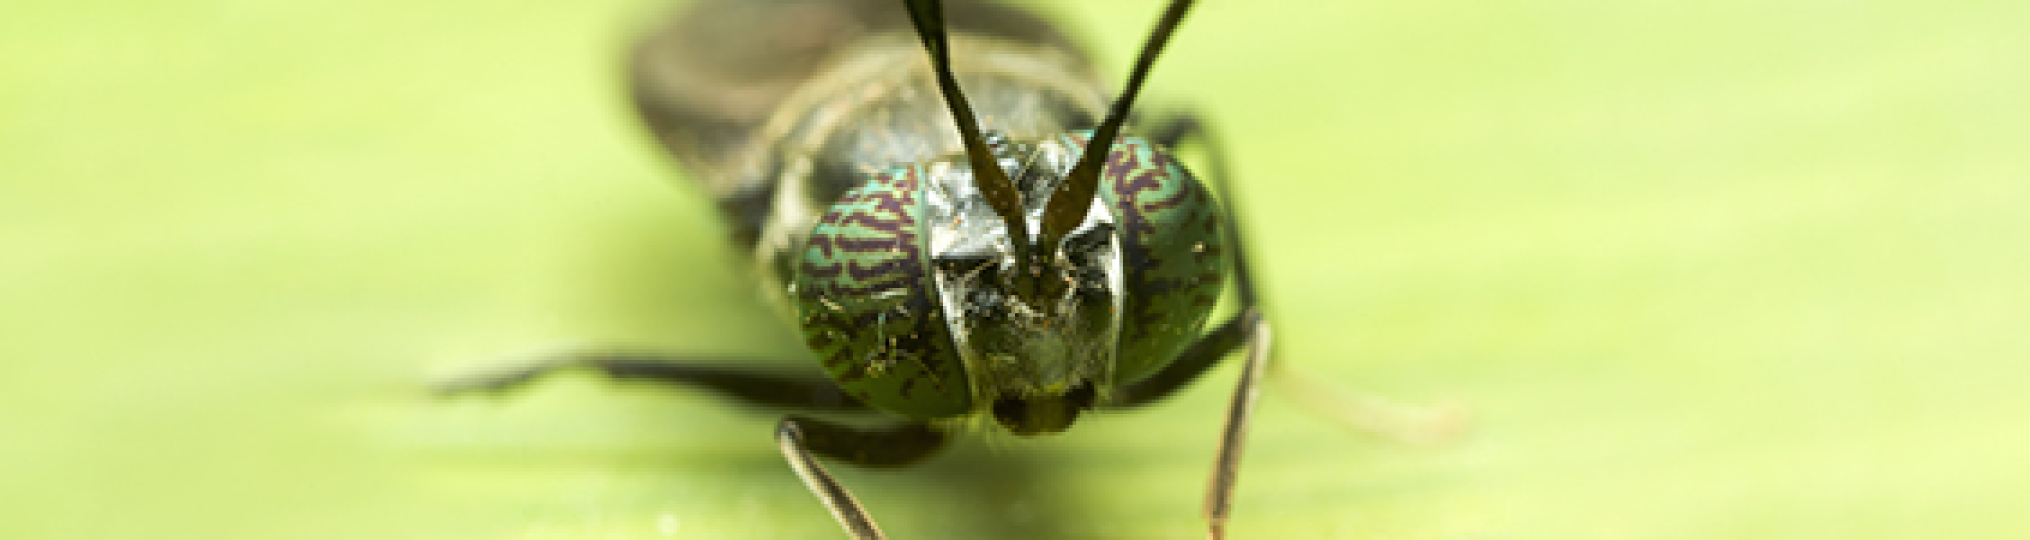 Stakeholdersmeeting insecten: (Meer)waarde van insecten in een circulaire economie